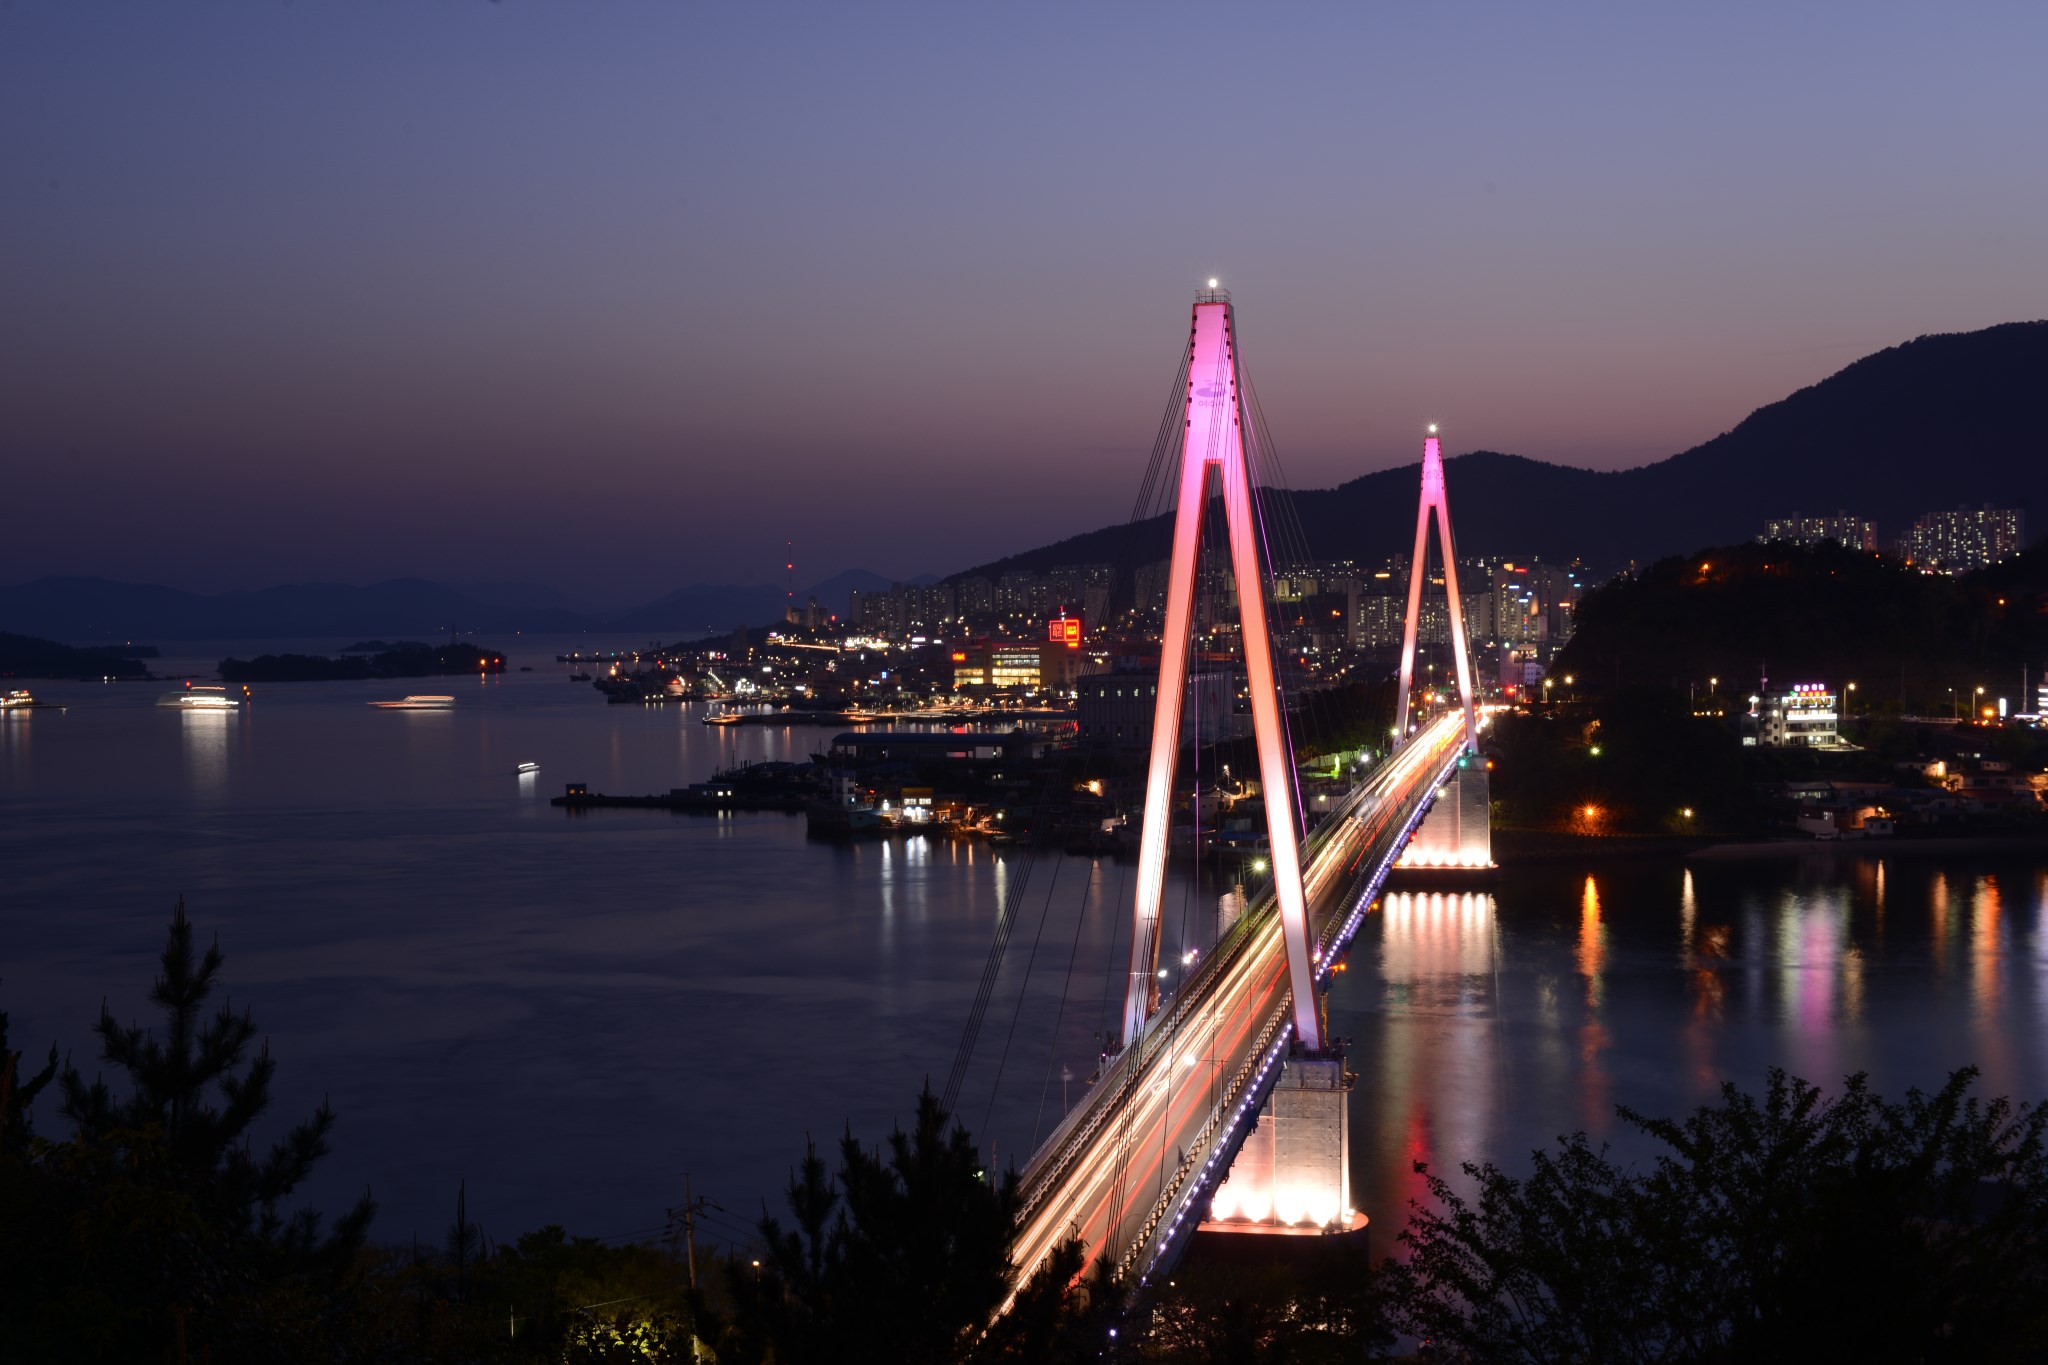 爱宝乐园丽水夜景!让我们去韩国最浪漫的地放吧!